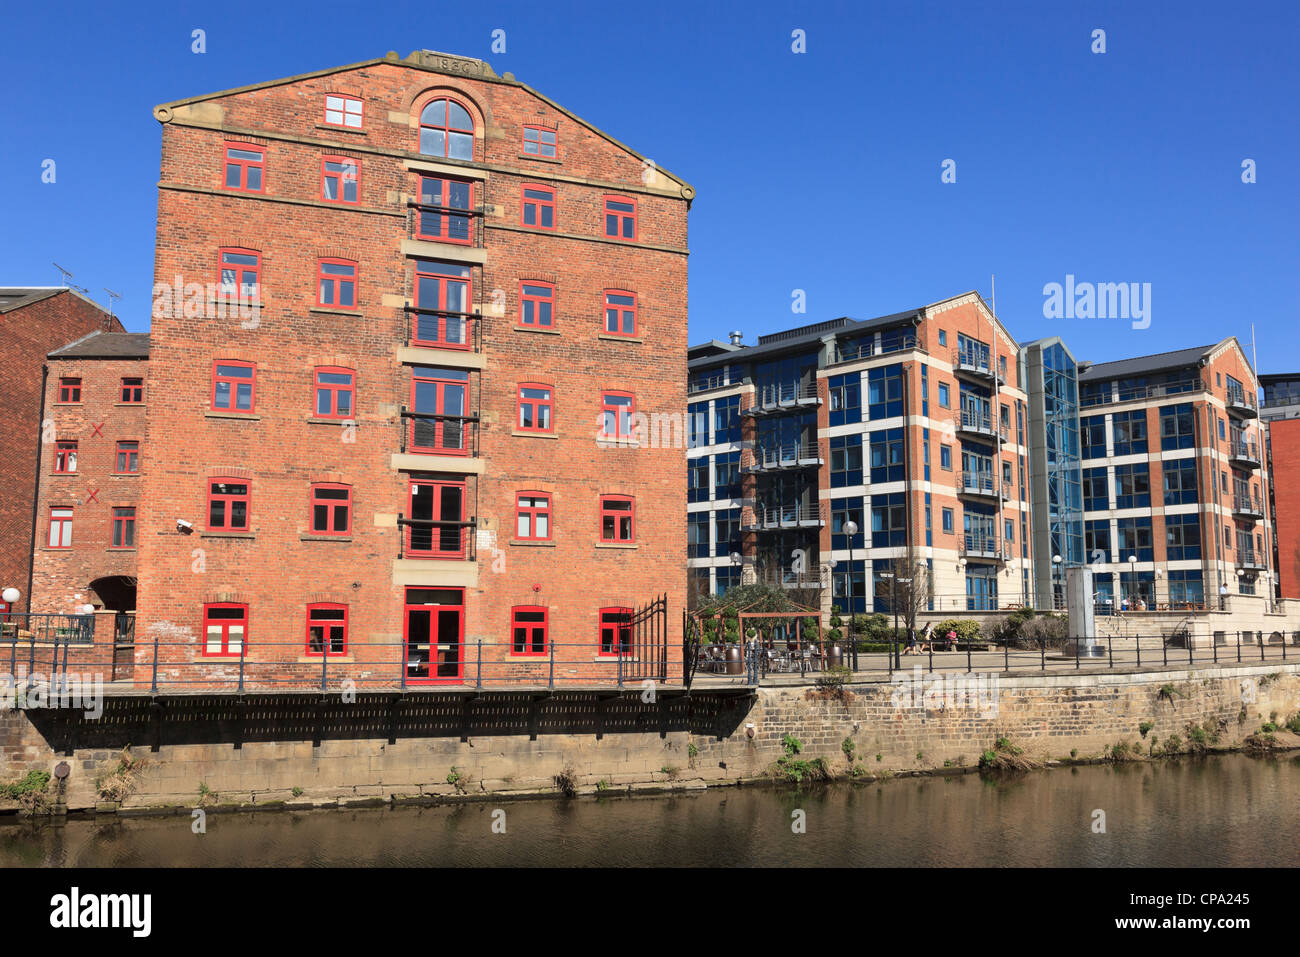 Vecchi edifici industriali e moderni appartamenti sul molo ristrutturato dal fiume Aire in Waterfront District of Leeds England Regno Unito Foto Stock